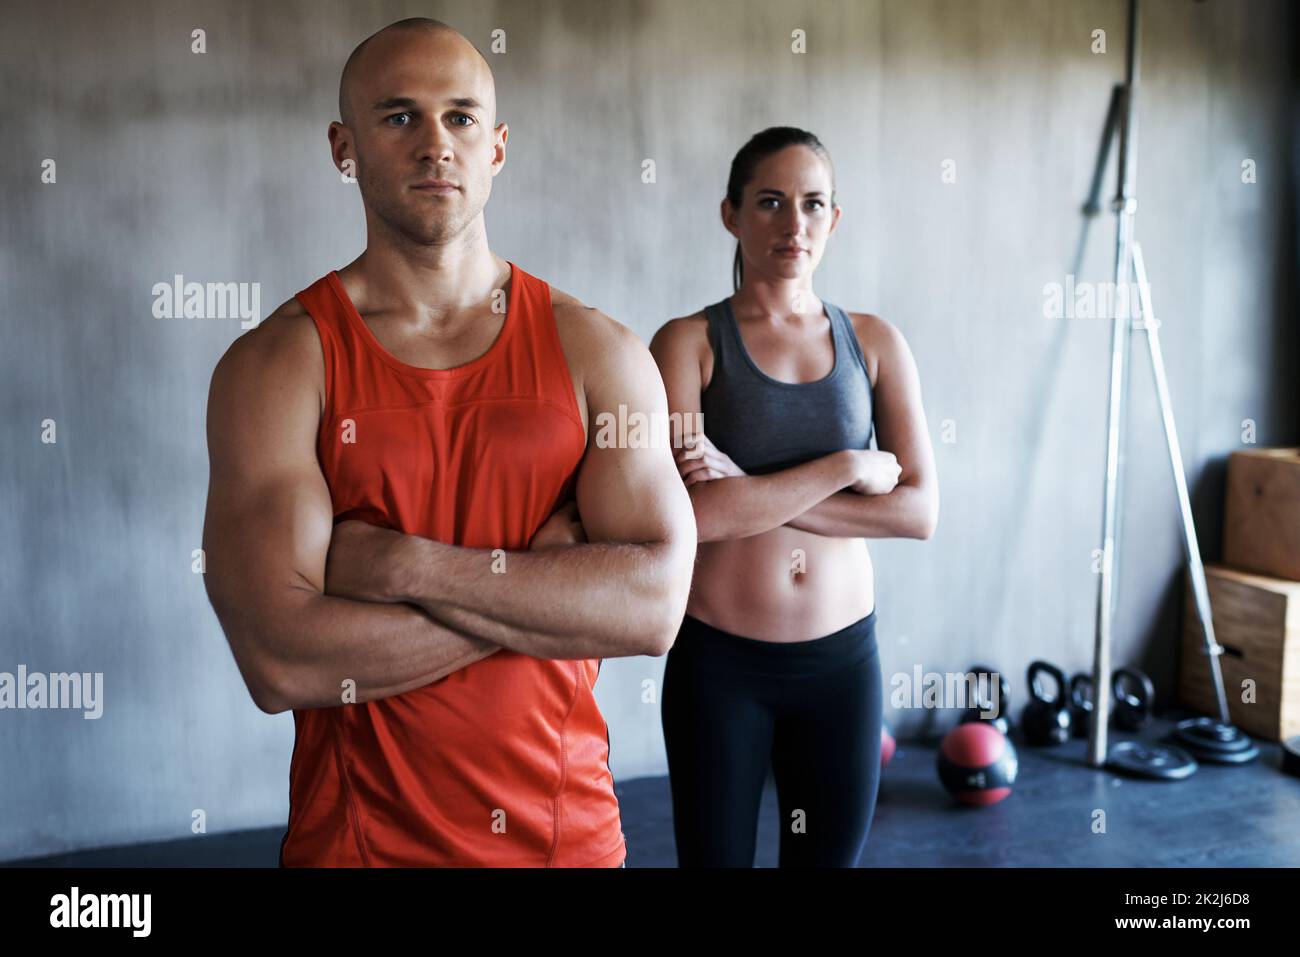 Training, um fit zu werden. Kurzer Schuss eines jungen Mannes und einer jungen Frau in einer Gymnastikkleidung. Stockfoto